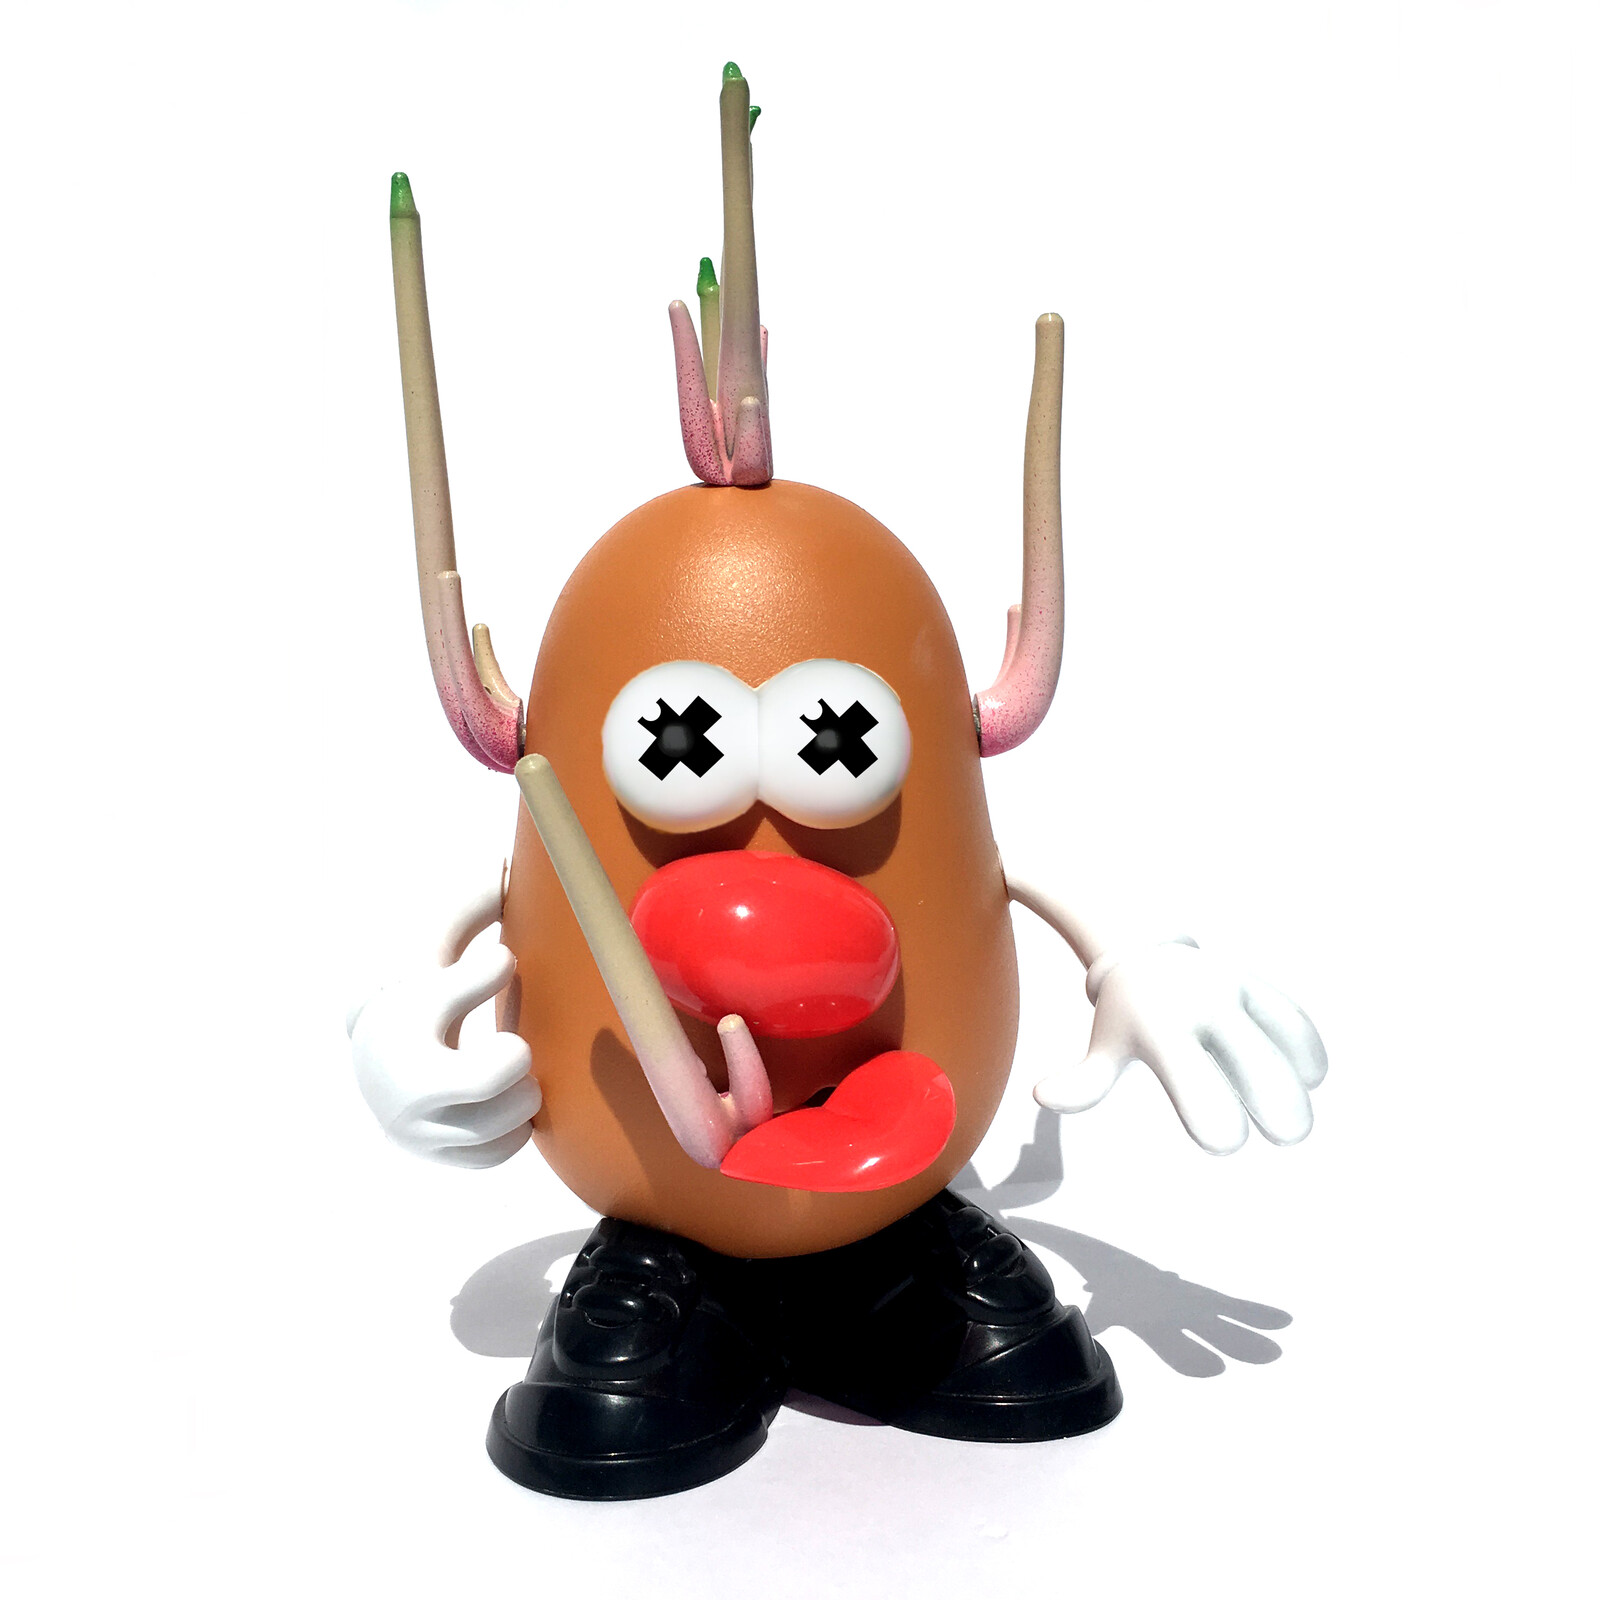 Mr. Potato Dead